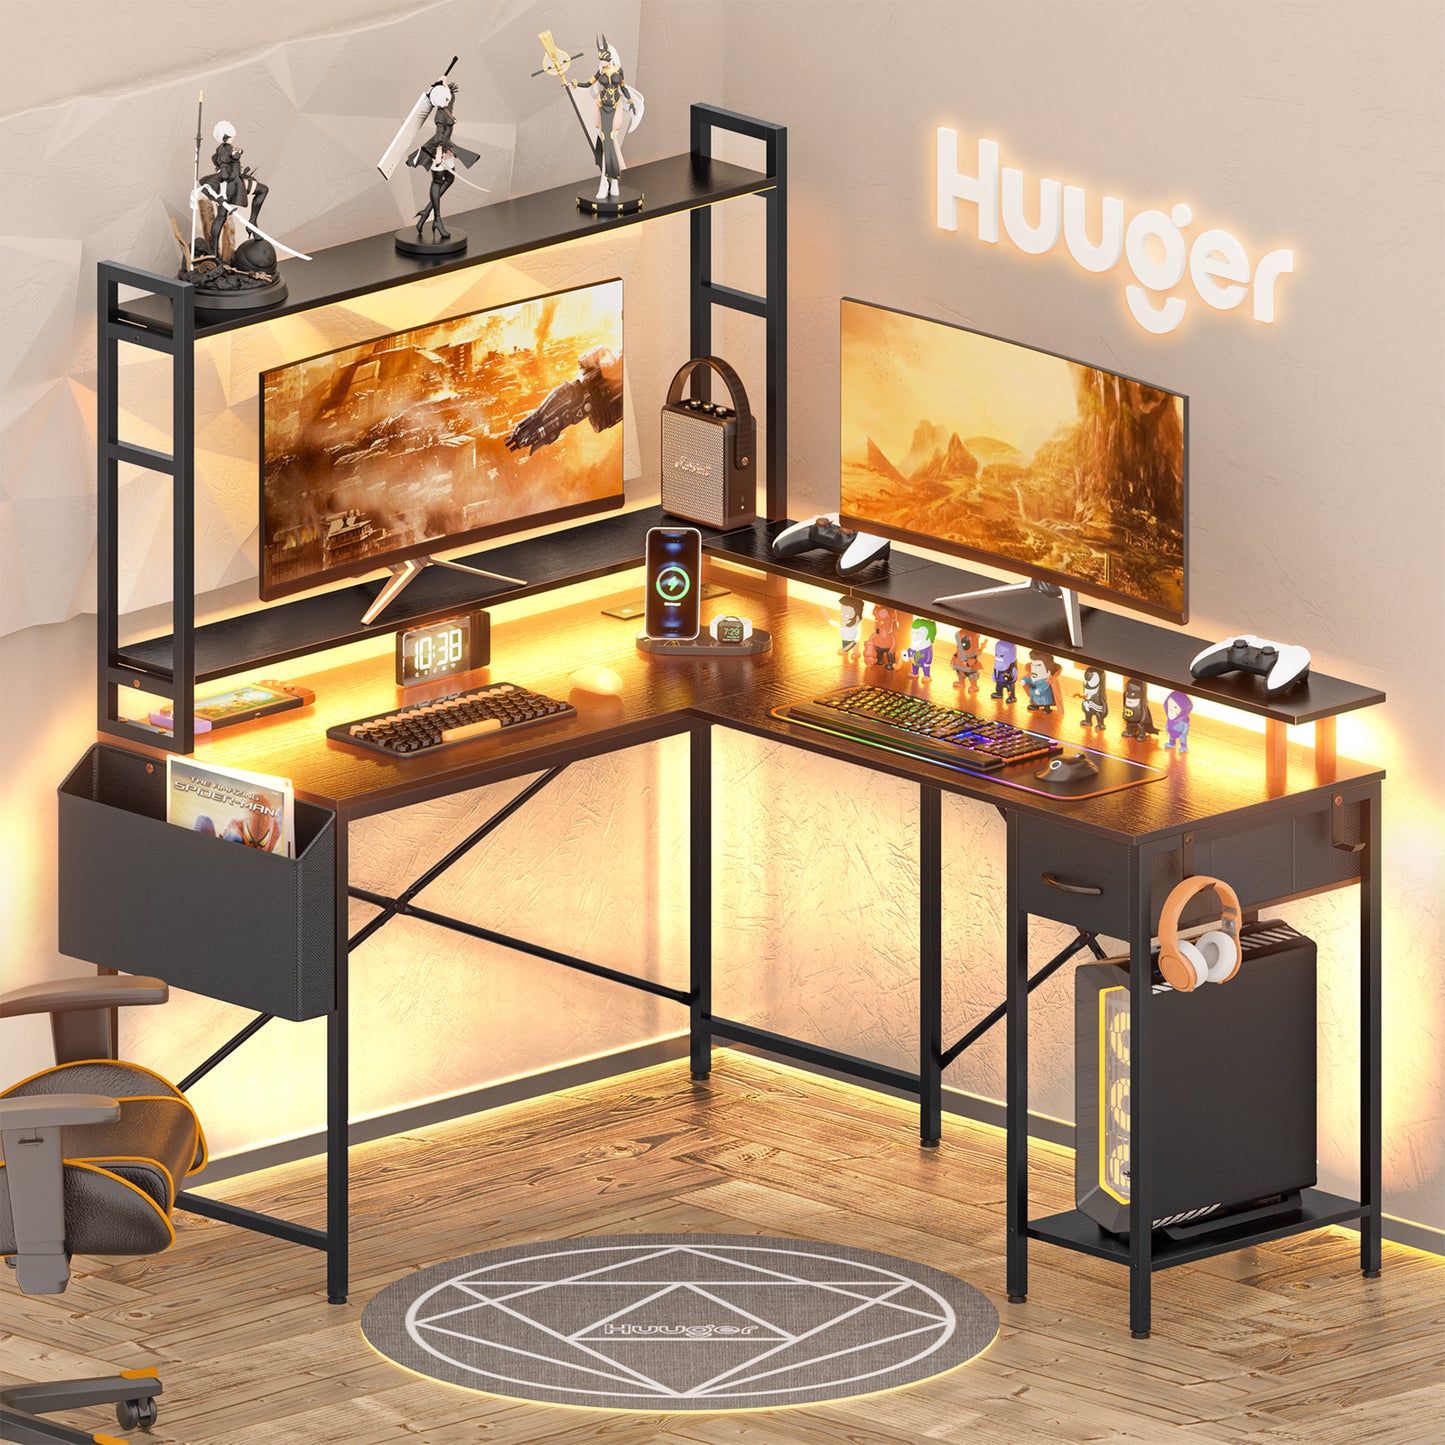 Huuger L Shaped Desk Gaming Desk with LED Lights & Power Outlets, Computer Desk with Storage Shelves, Black